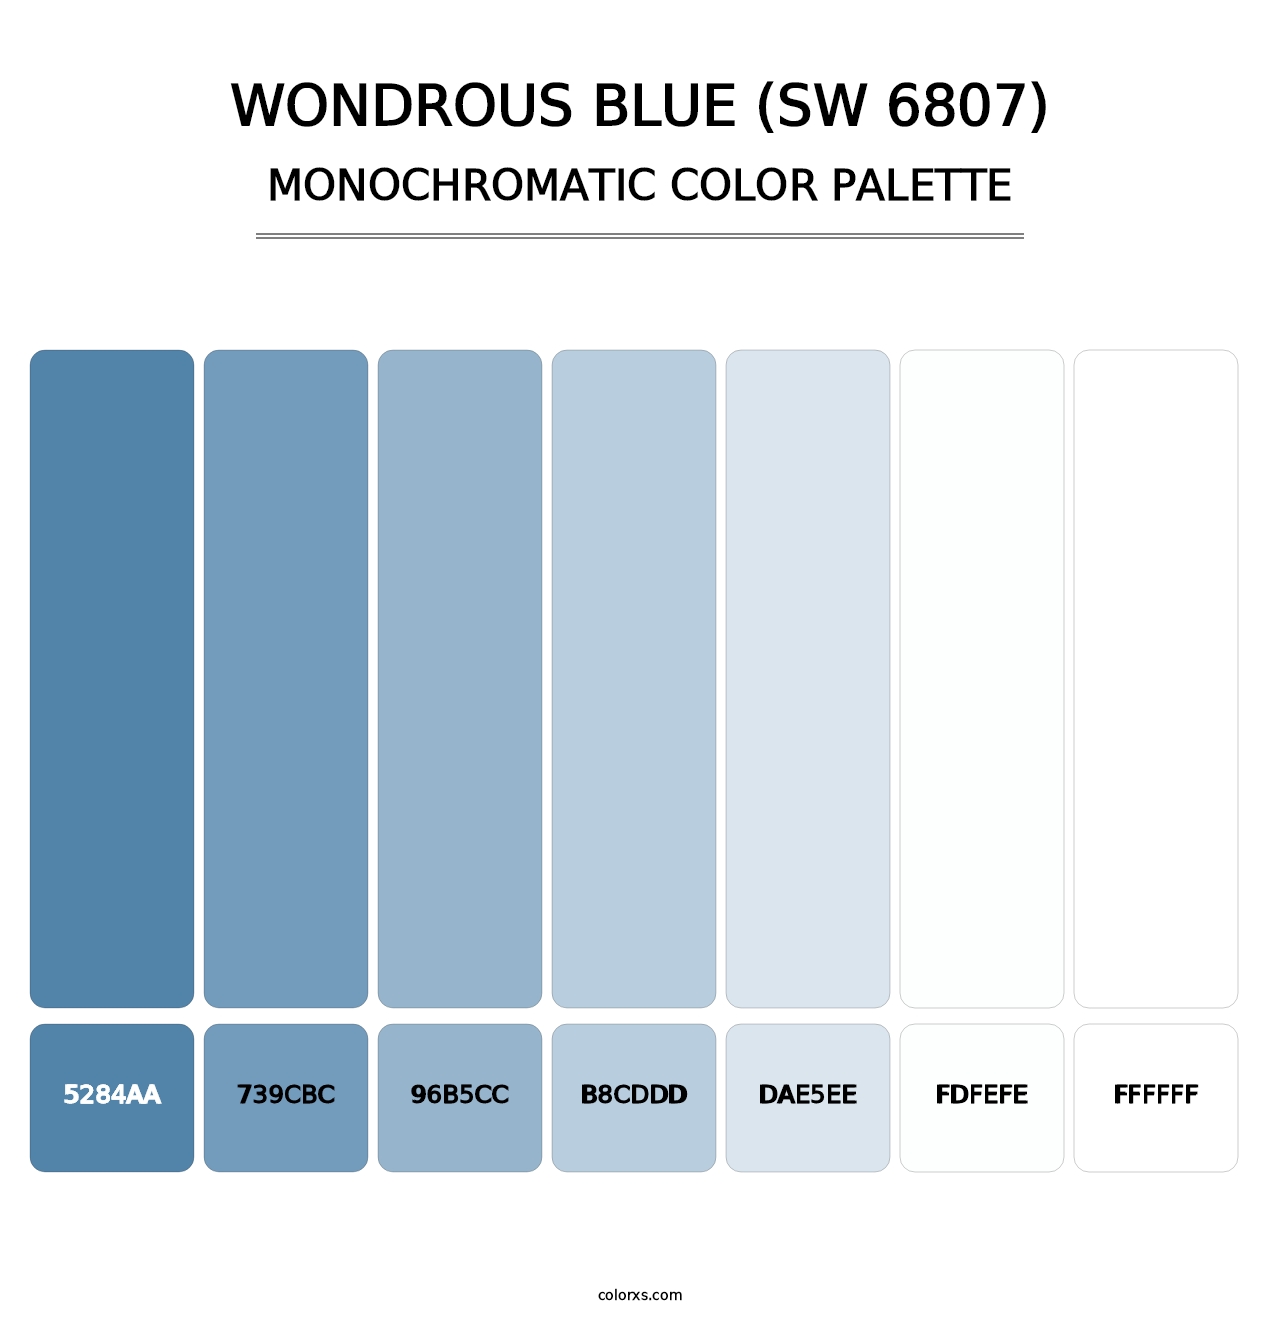 Wondrous Blue (SW 6807) - Monochromatic Color Palette